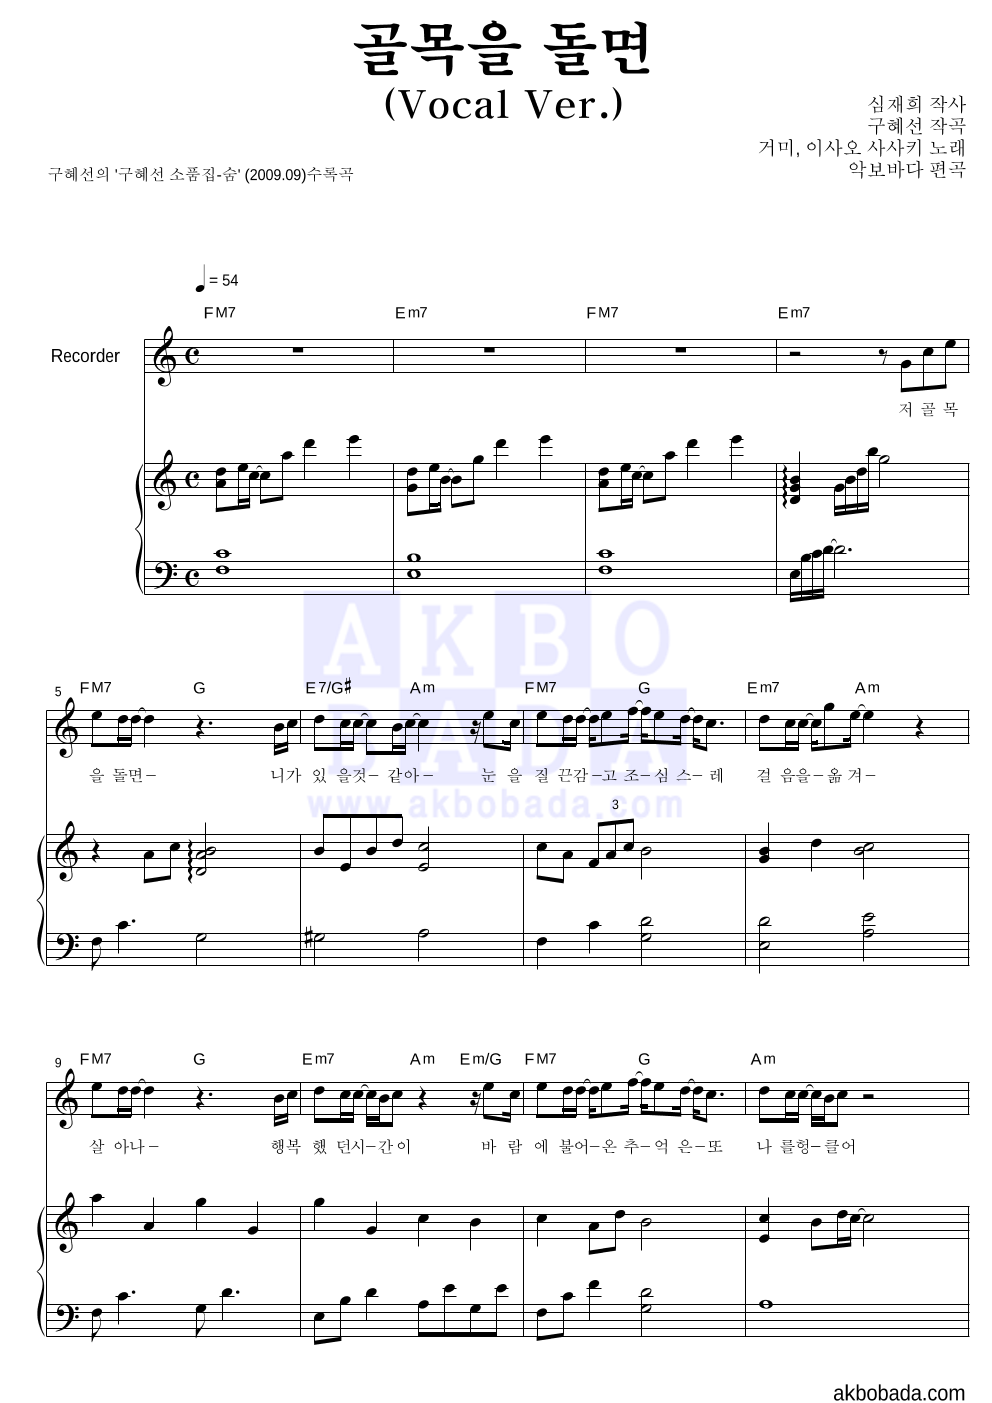 구혜선 - 골목을 돌면 (Vocal Ver.) (악기별) 리코더&피아노 악보 